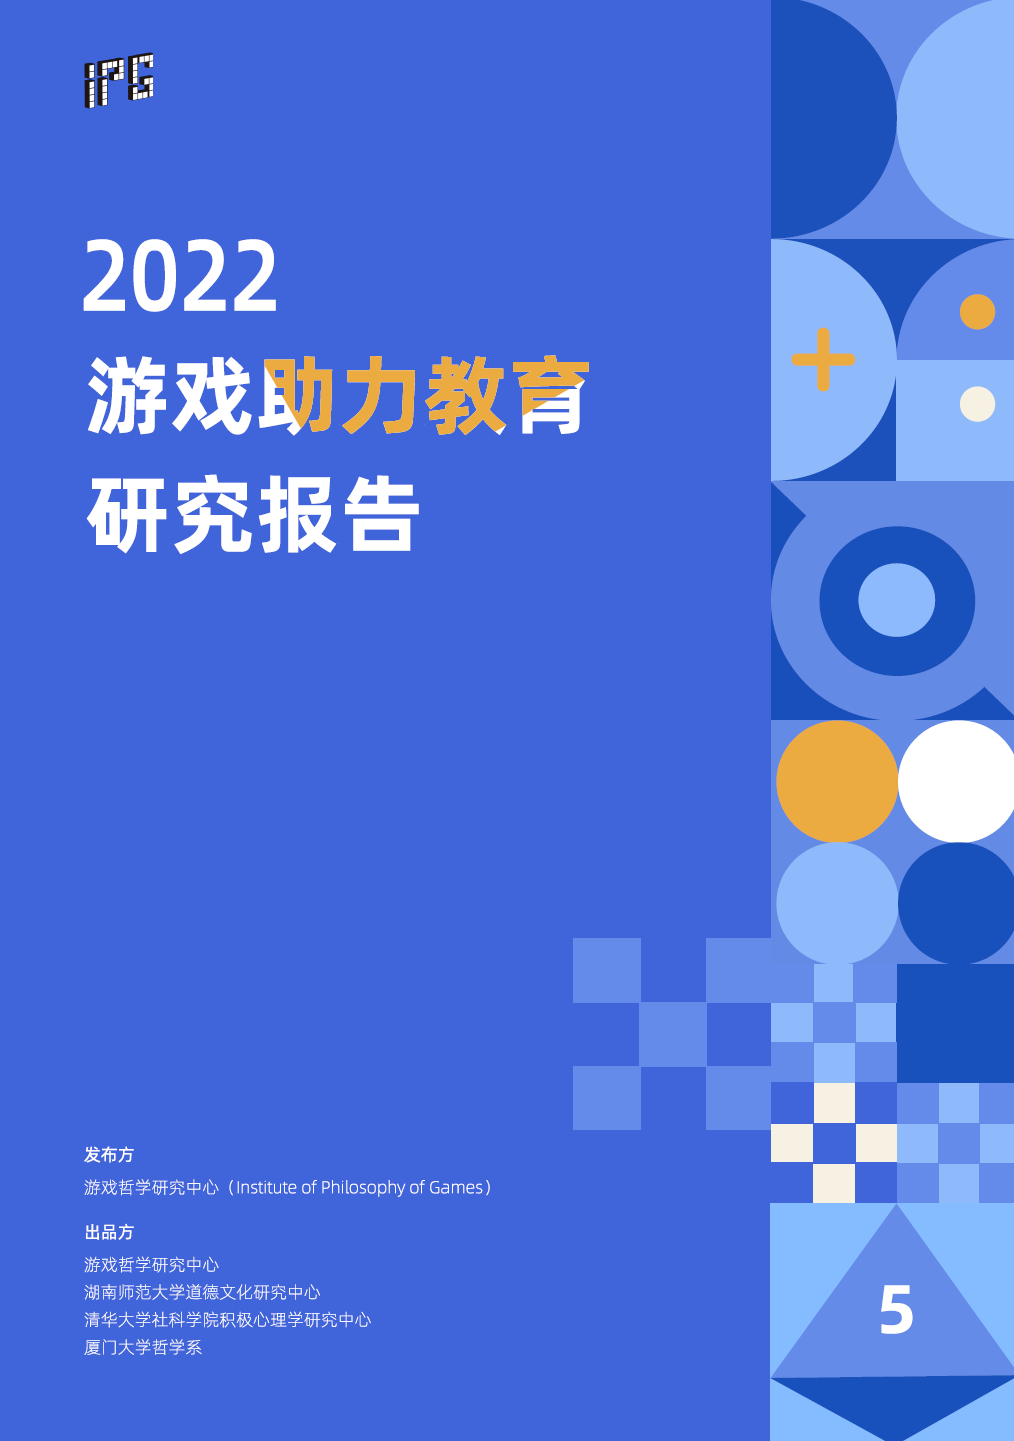 游戏哲学研究中心发布《2022游戏助力教育研究报告》